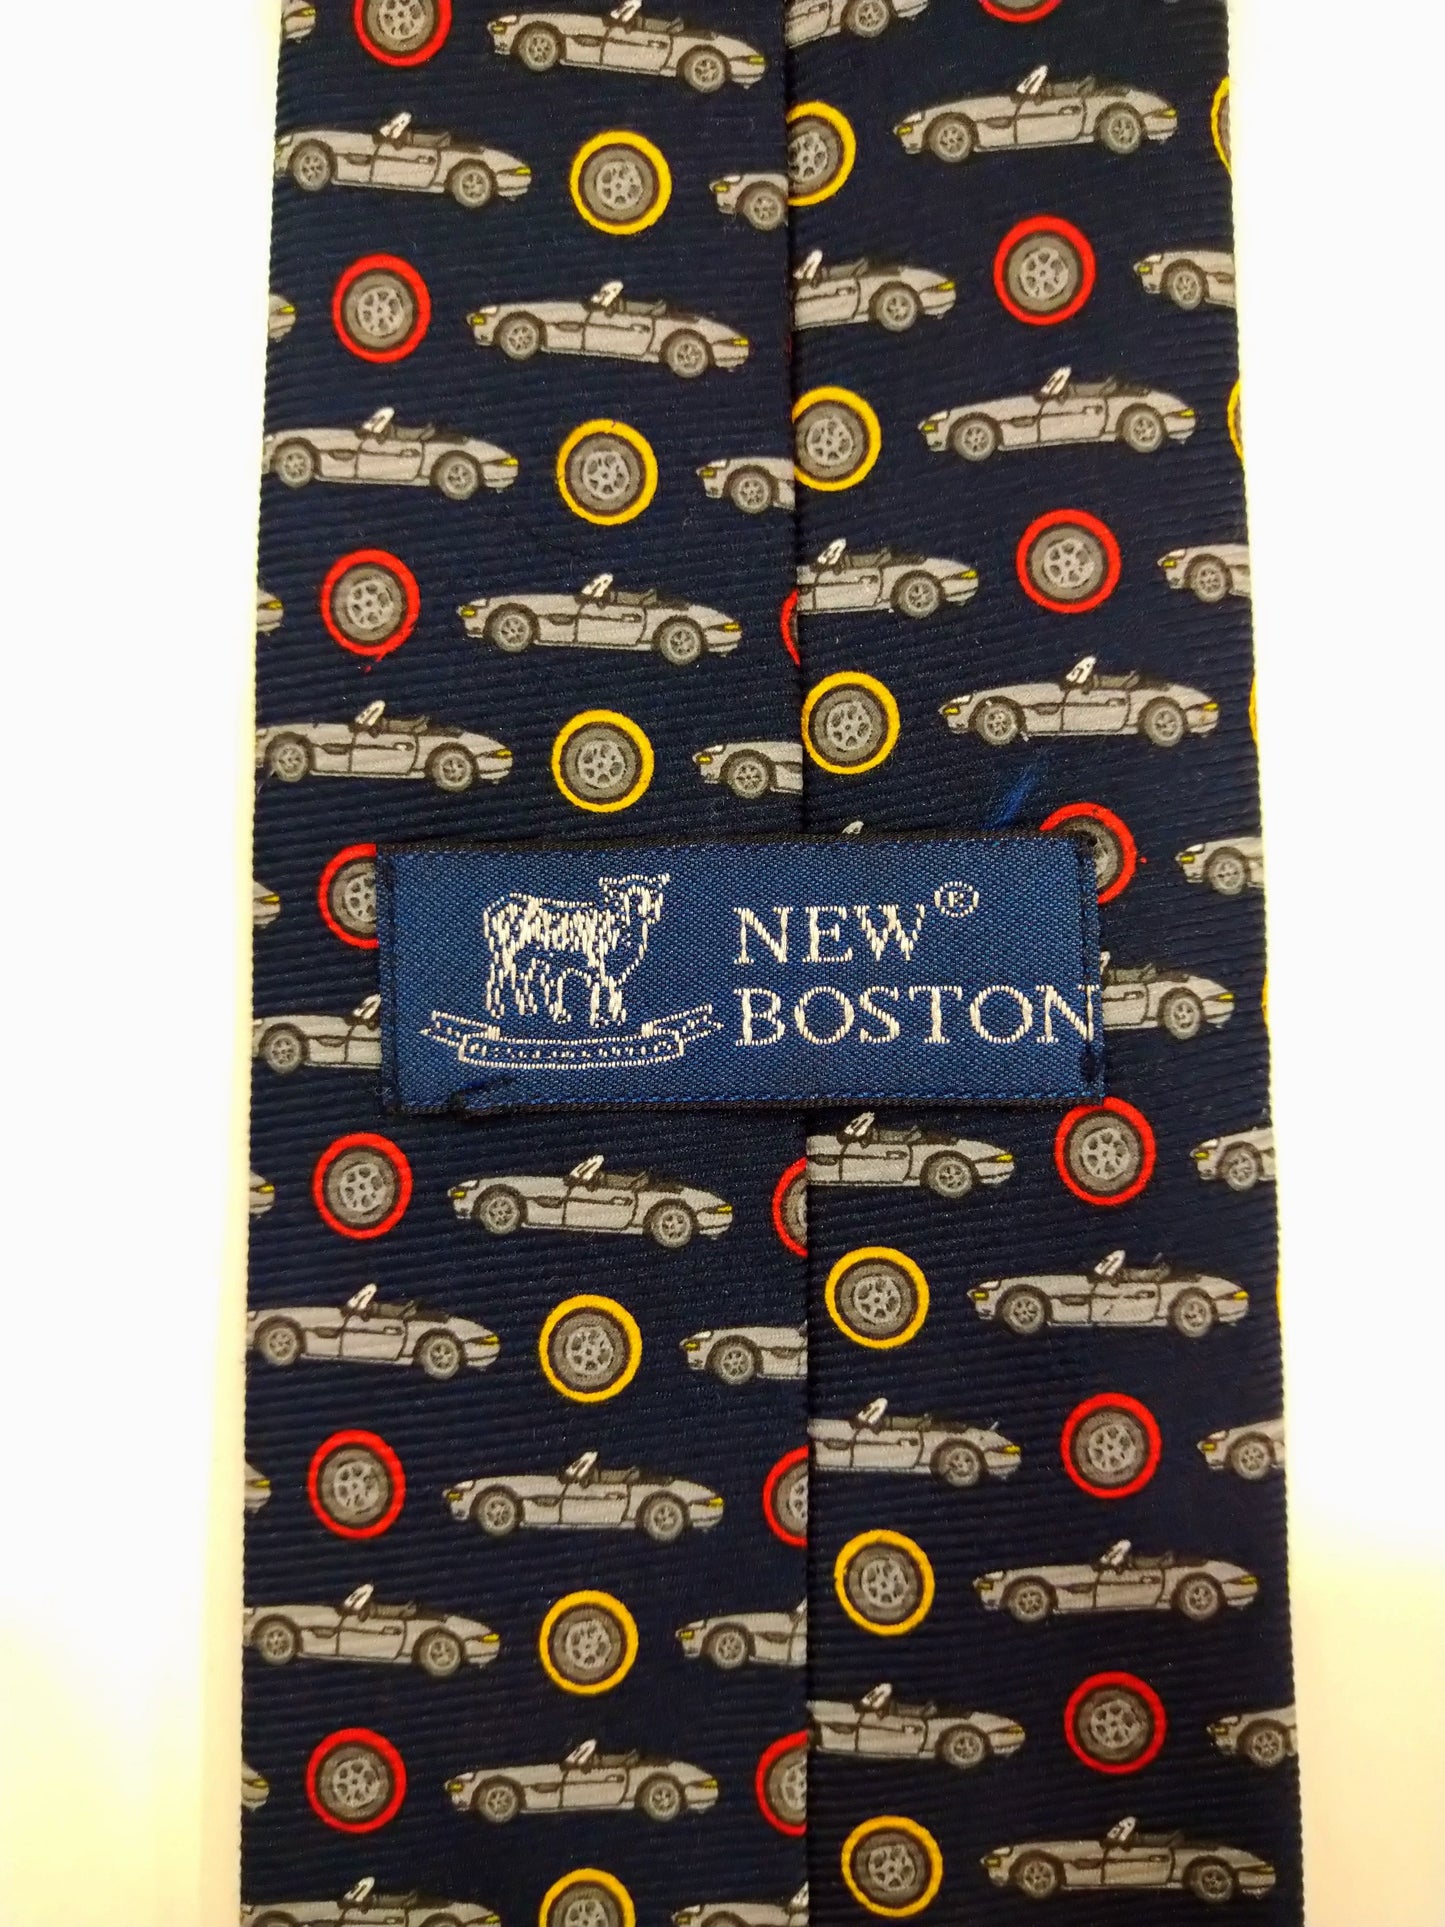 New Boston Soft Polyester. Blau mit wunderschönen alten Automotiv.